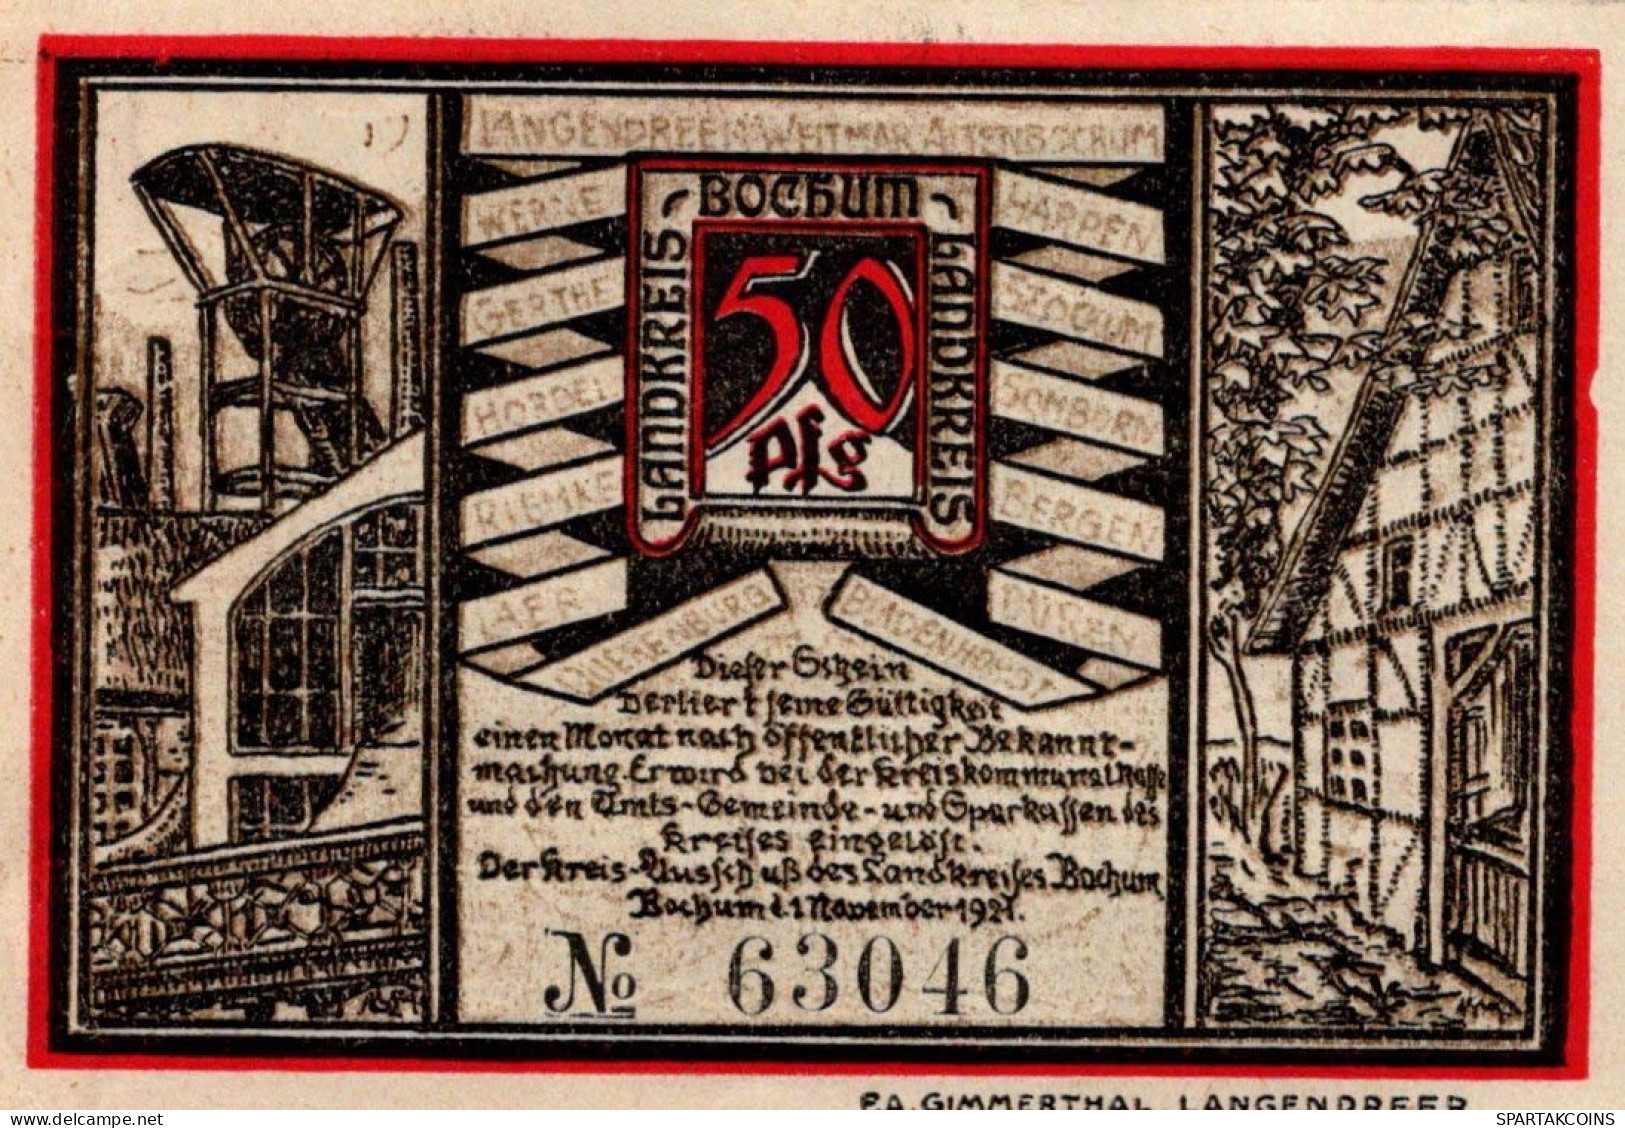 50 PFENNIG 1921 Stadt BOCHUM Westphalia UNC DEUTSCHLAND Notgeld Banknote #PA250 - [11] Local Banknote Issues